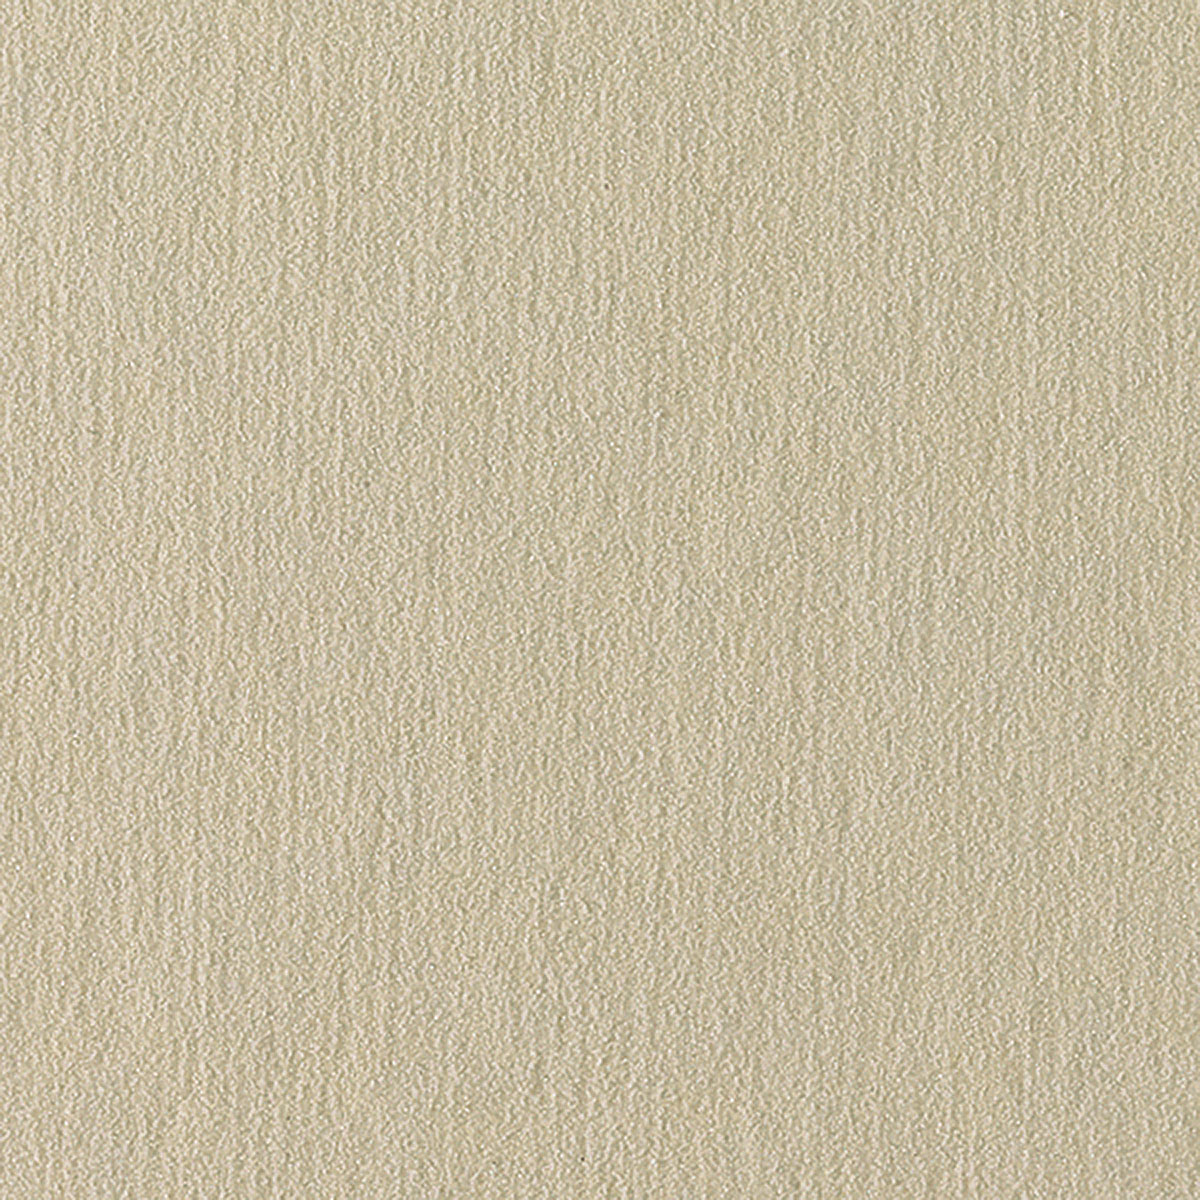 UART Sanded Pastel Paper 600 Grade 12 x 18 (Pack of 10)